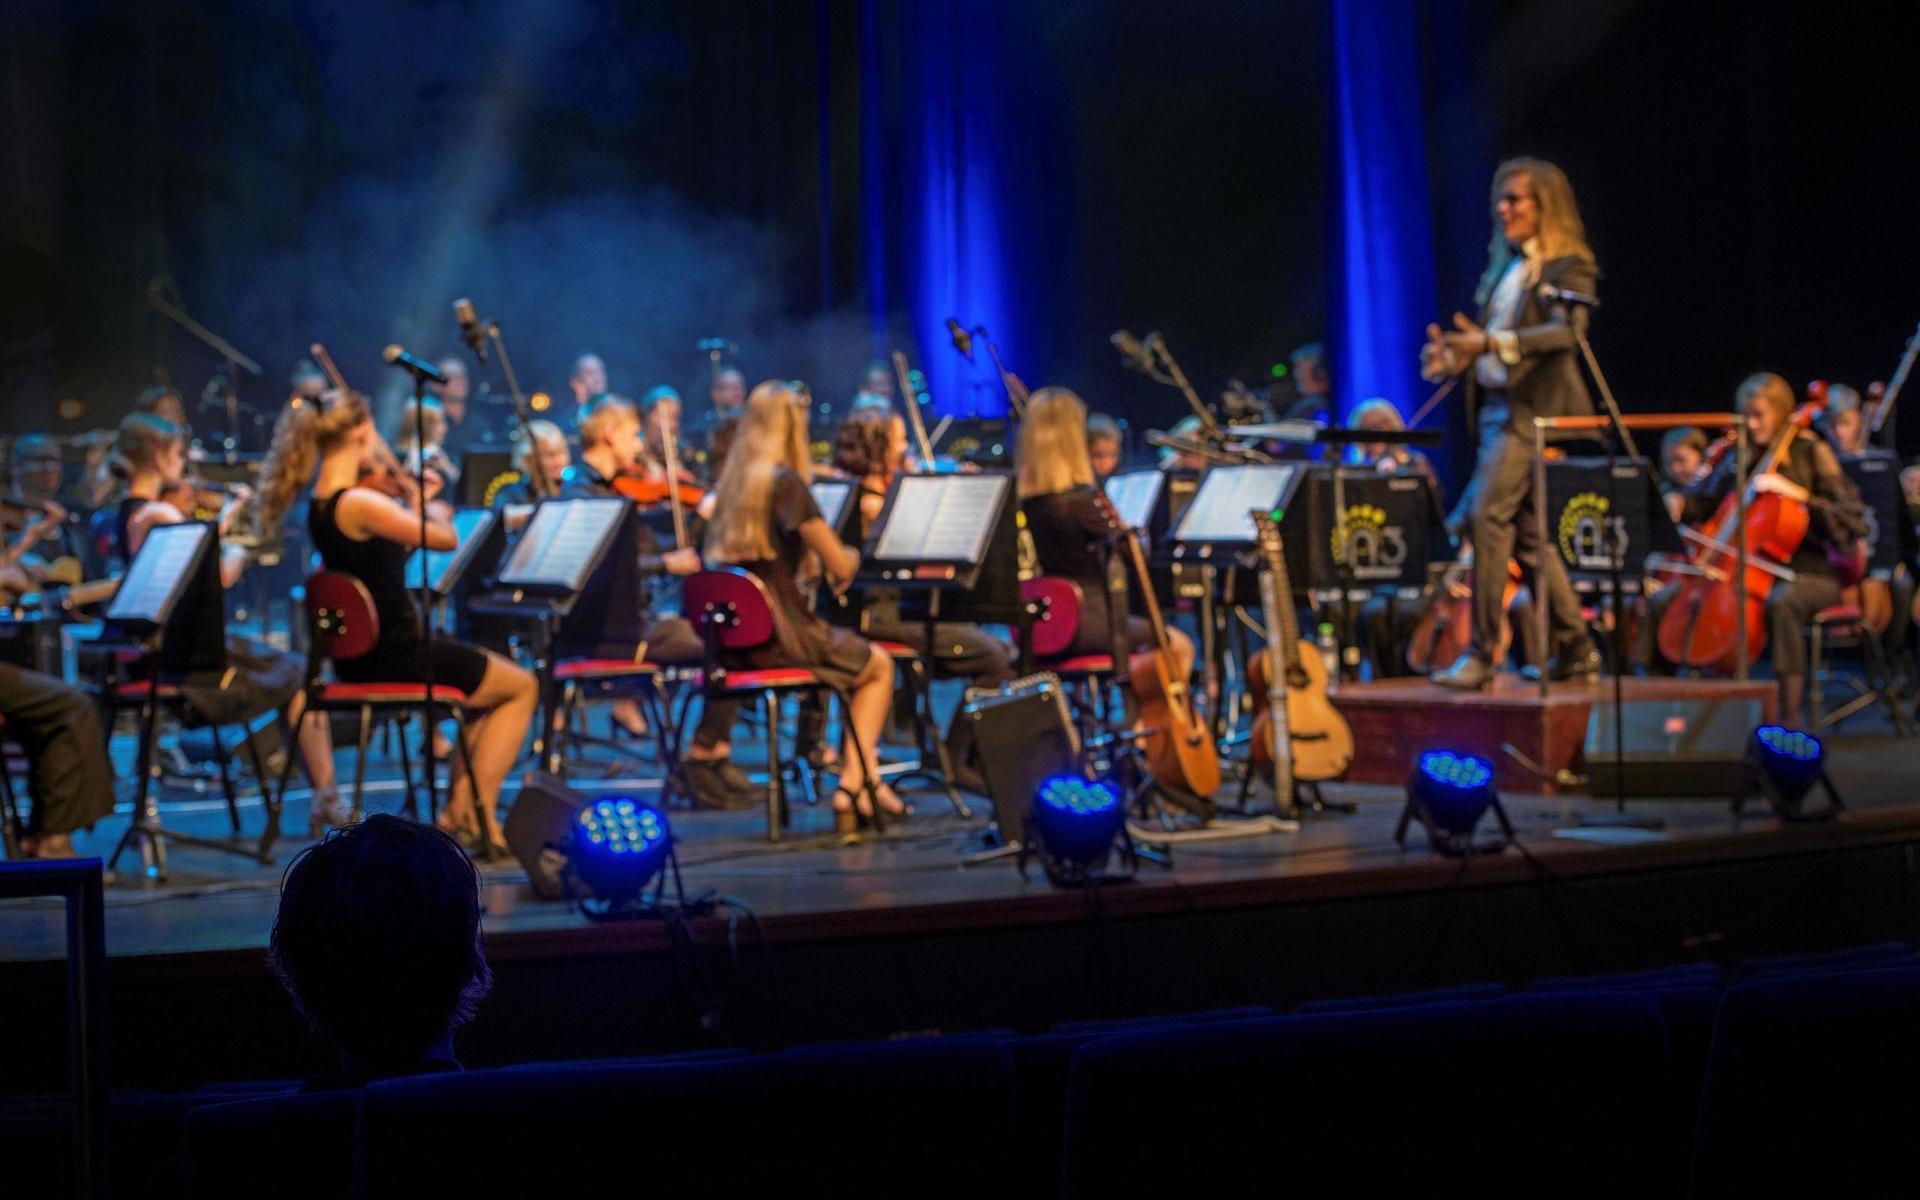 Förra sommaren livestremades en konsert med N3 symfoniorkester och Timo Räisinen från Hebeteatern i Trollhättan. 